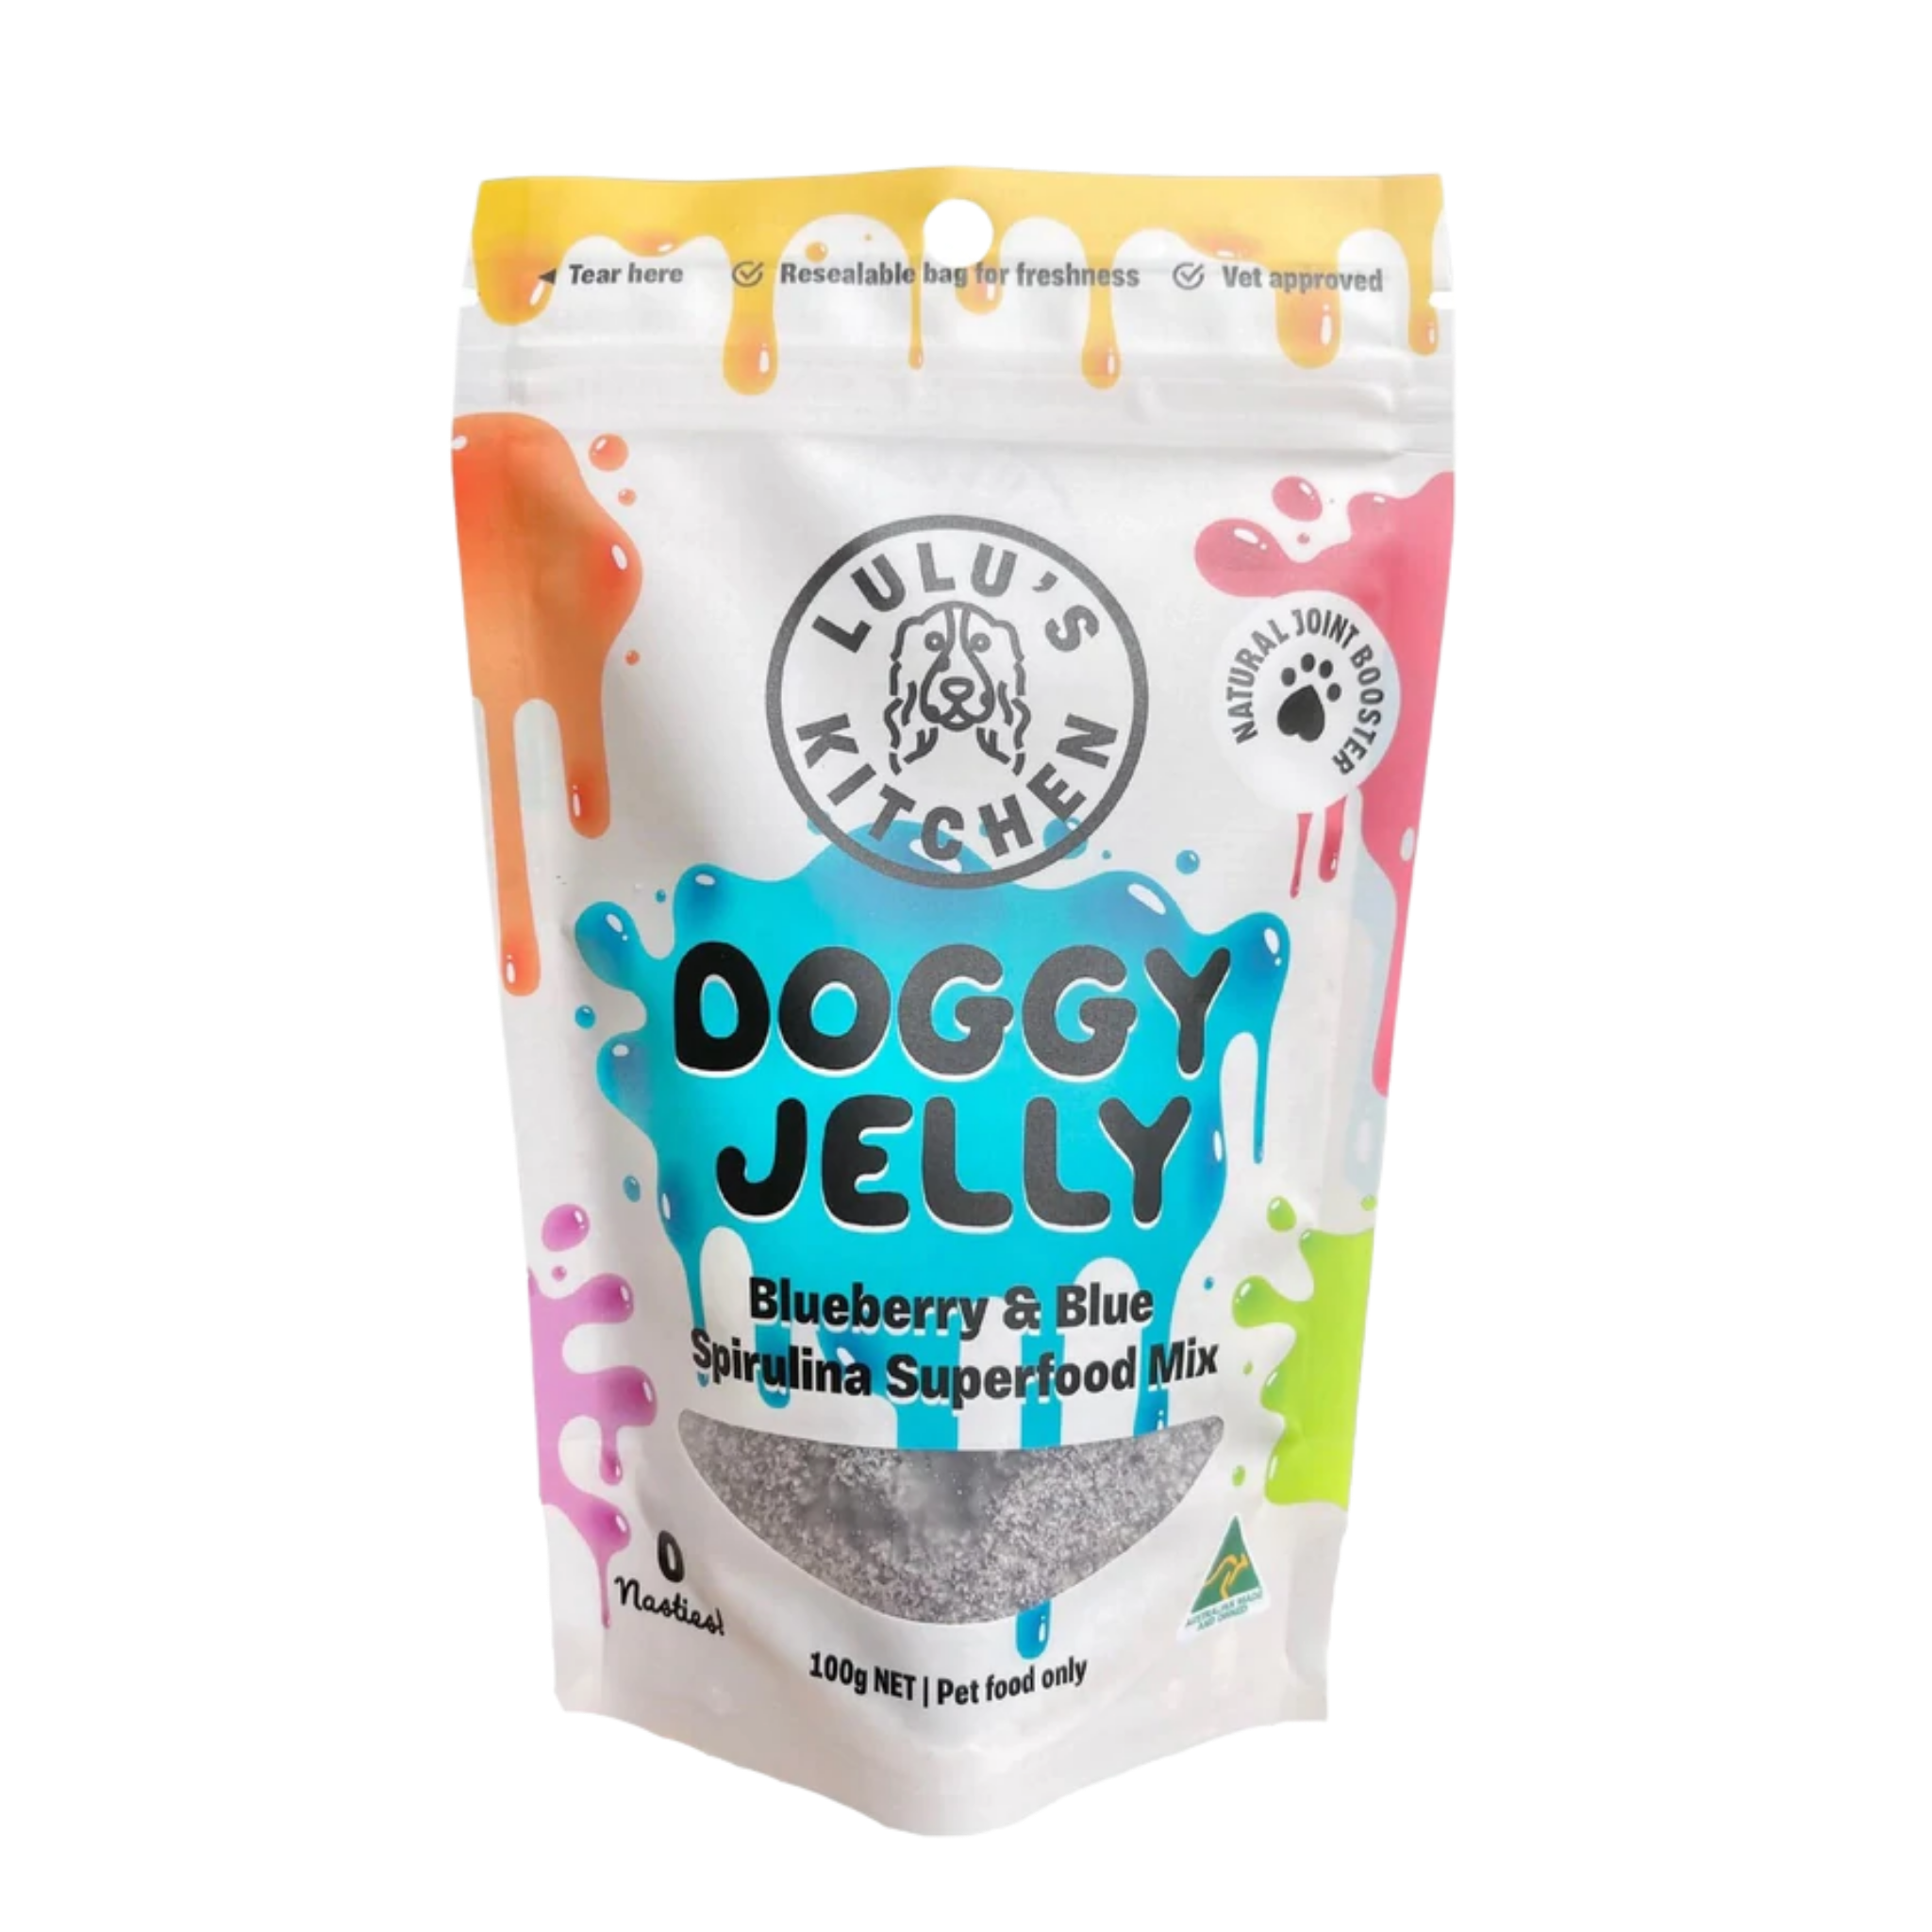 Doggy Jelly | Blueberry & Blue Spirulina Superfood Jelly